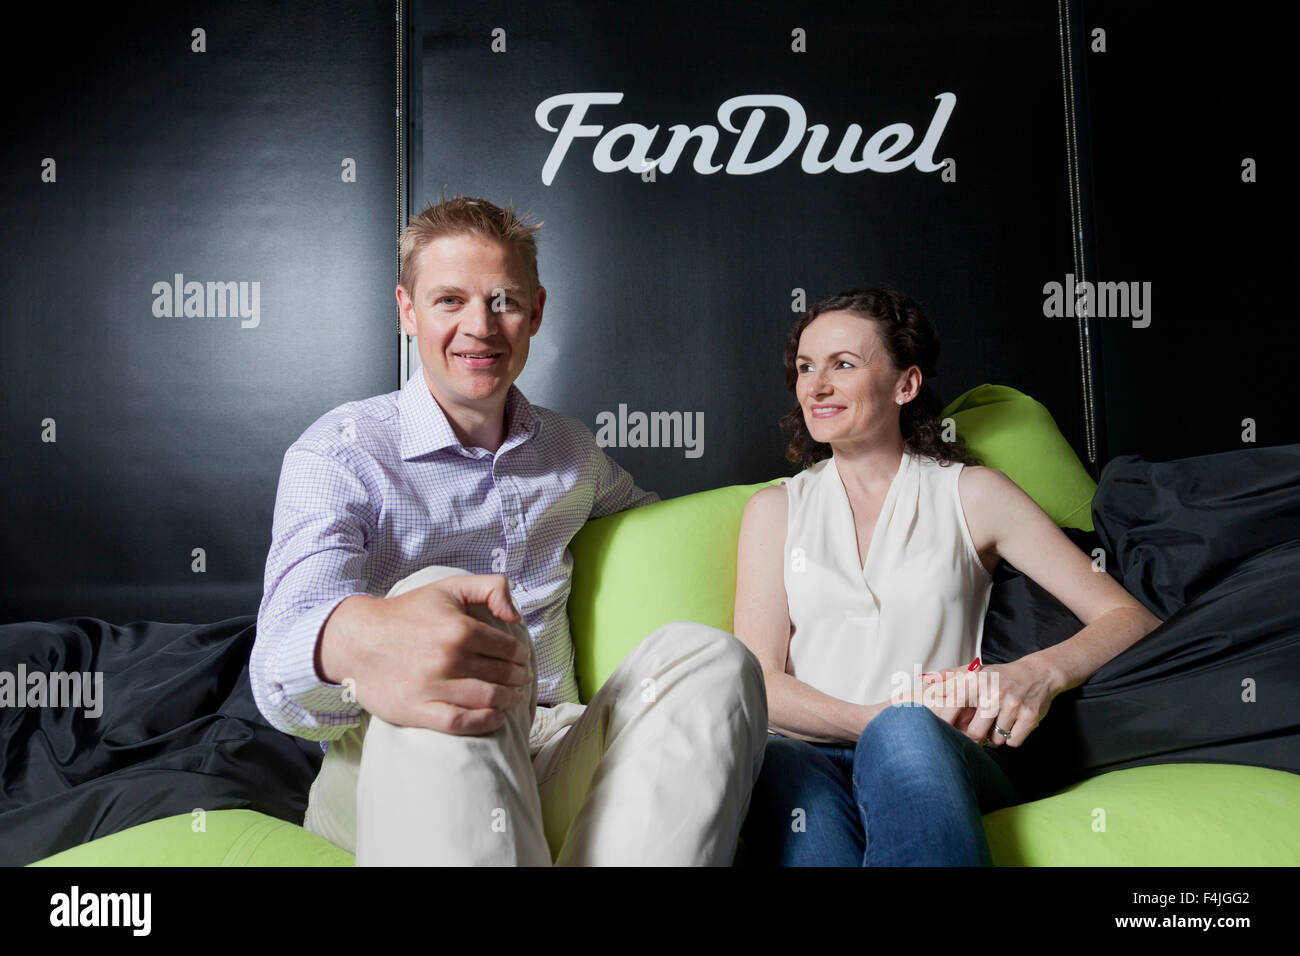 Nigel (à gauche) et Lesley Eccles. Co-fondateurs de la plate-forme en ligne fantasy sports, FanDuel. Edimbourg, Ecosse. Banque D'Images